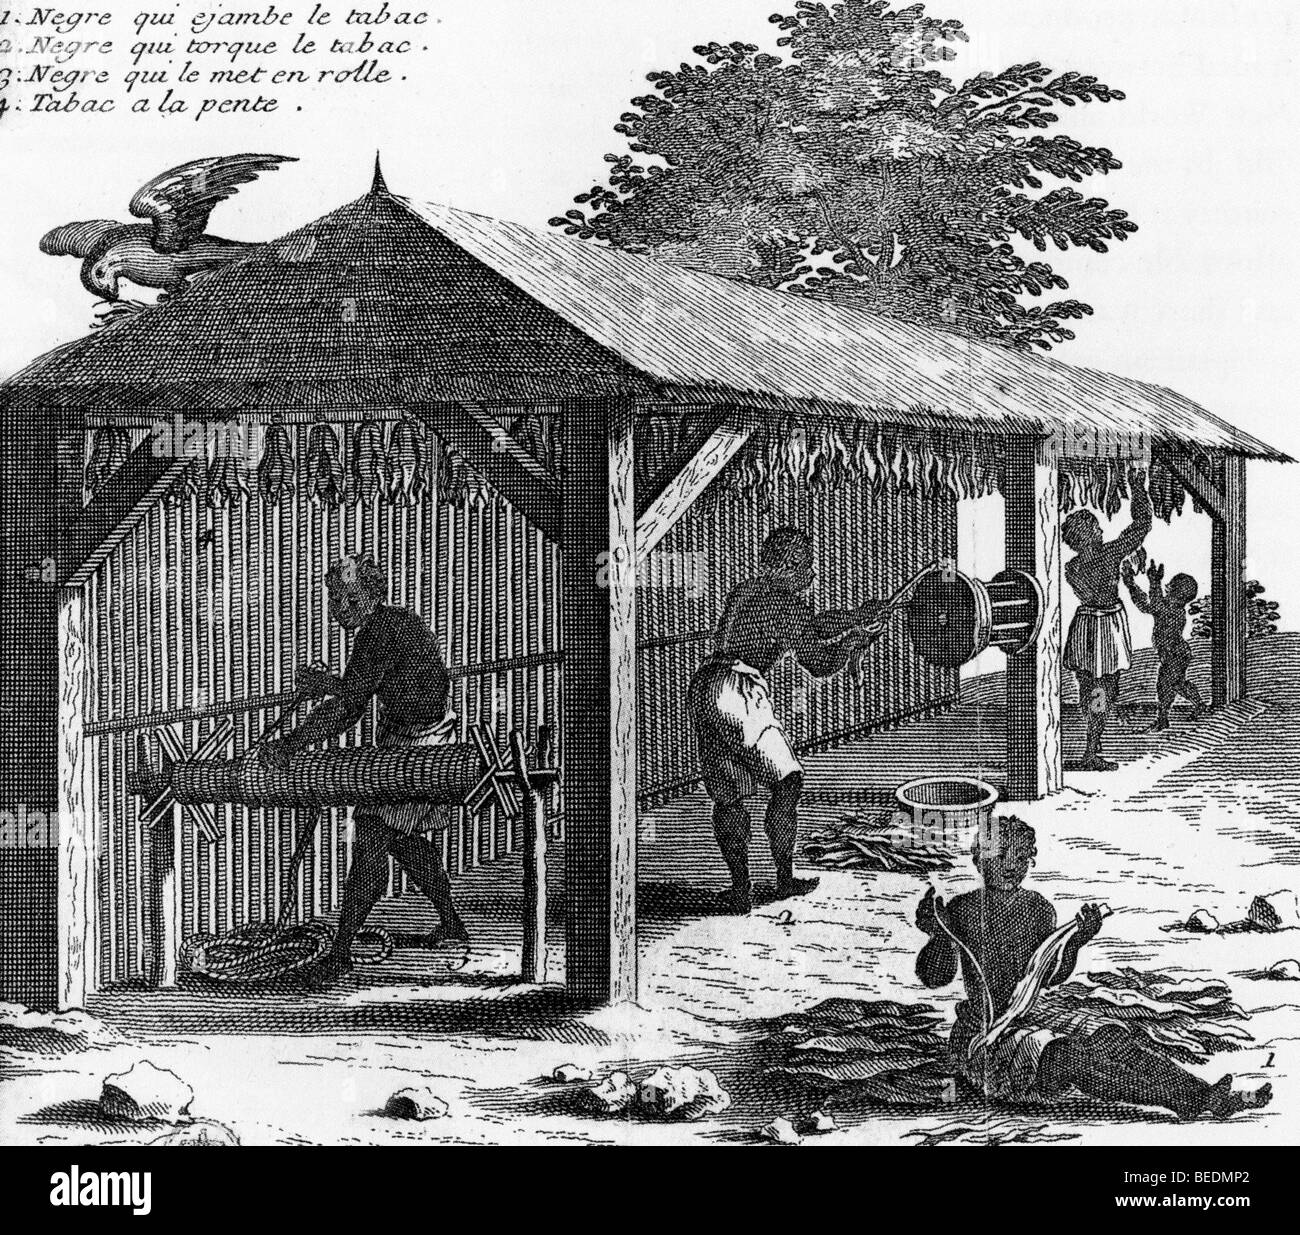 Le traitement du tabac par des esclaves de Saint-Domingue dans ce qui est maintenant la République dominicaine illustré dans une gravure du 18ème siècle Banque D'Images